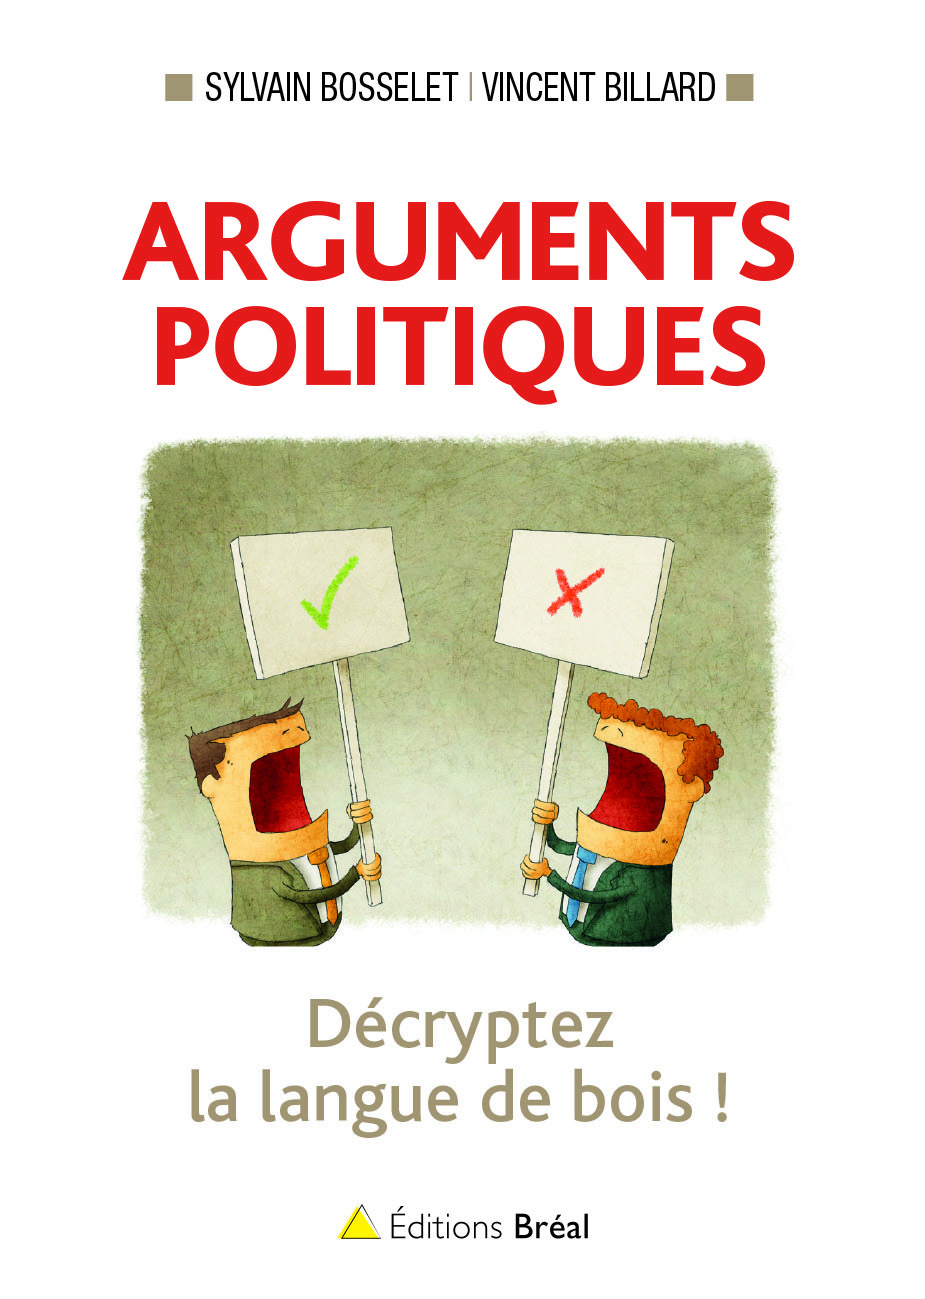 Arguments politiques, decryptez la langue de bois ! (9782749535661-front-cover)